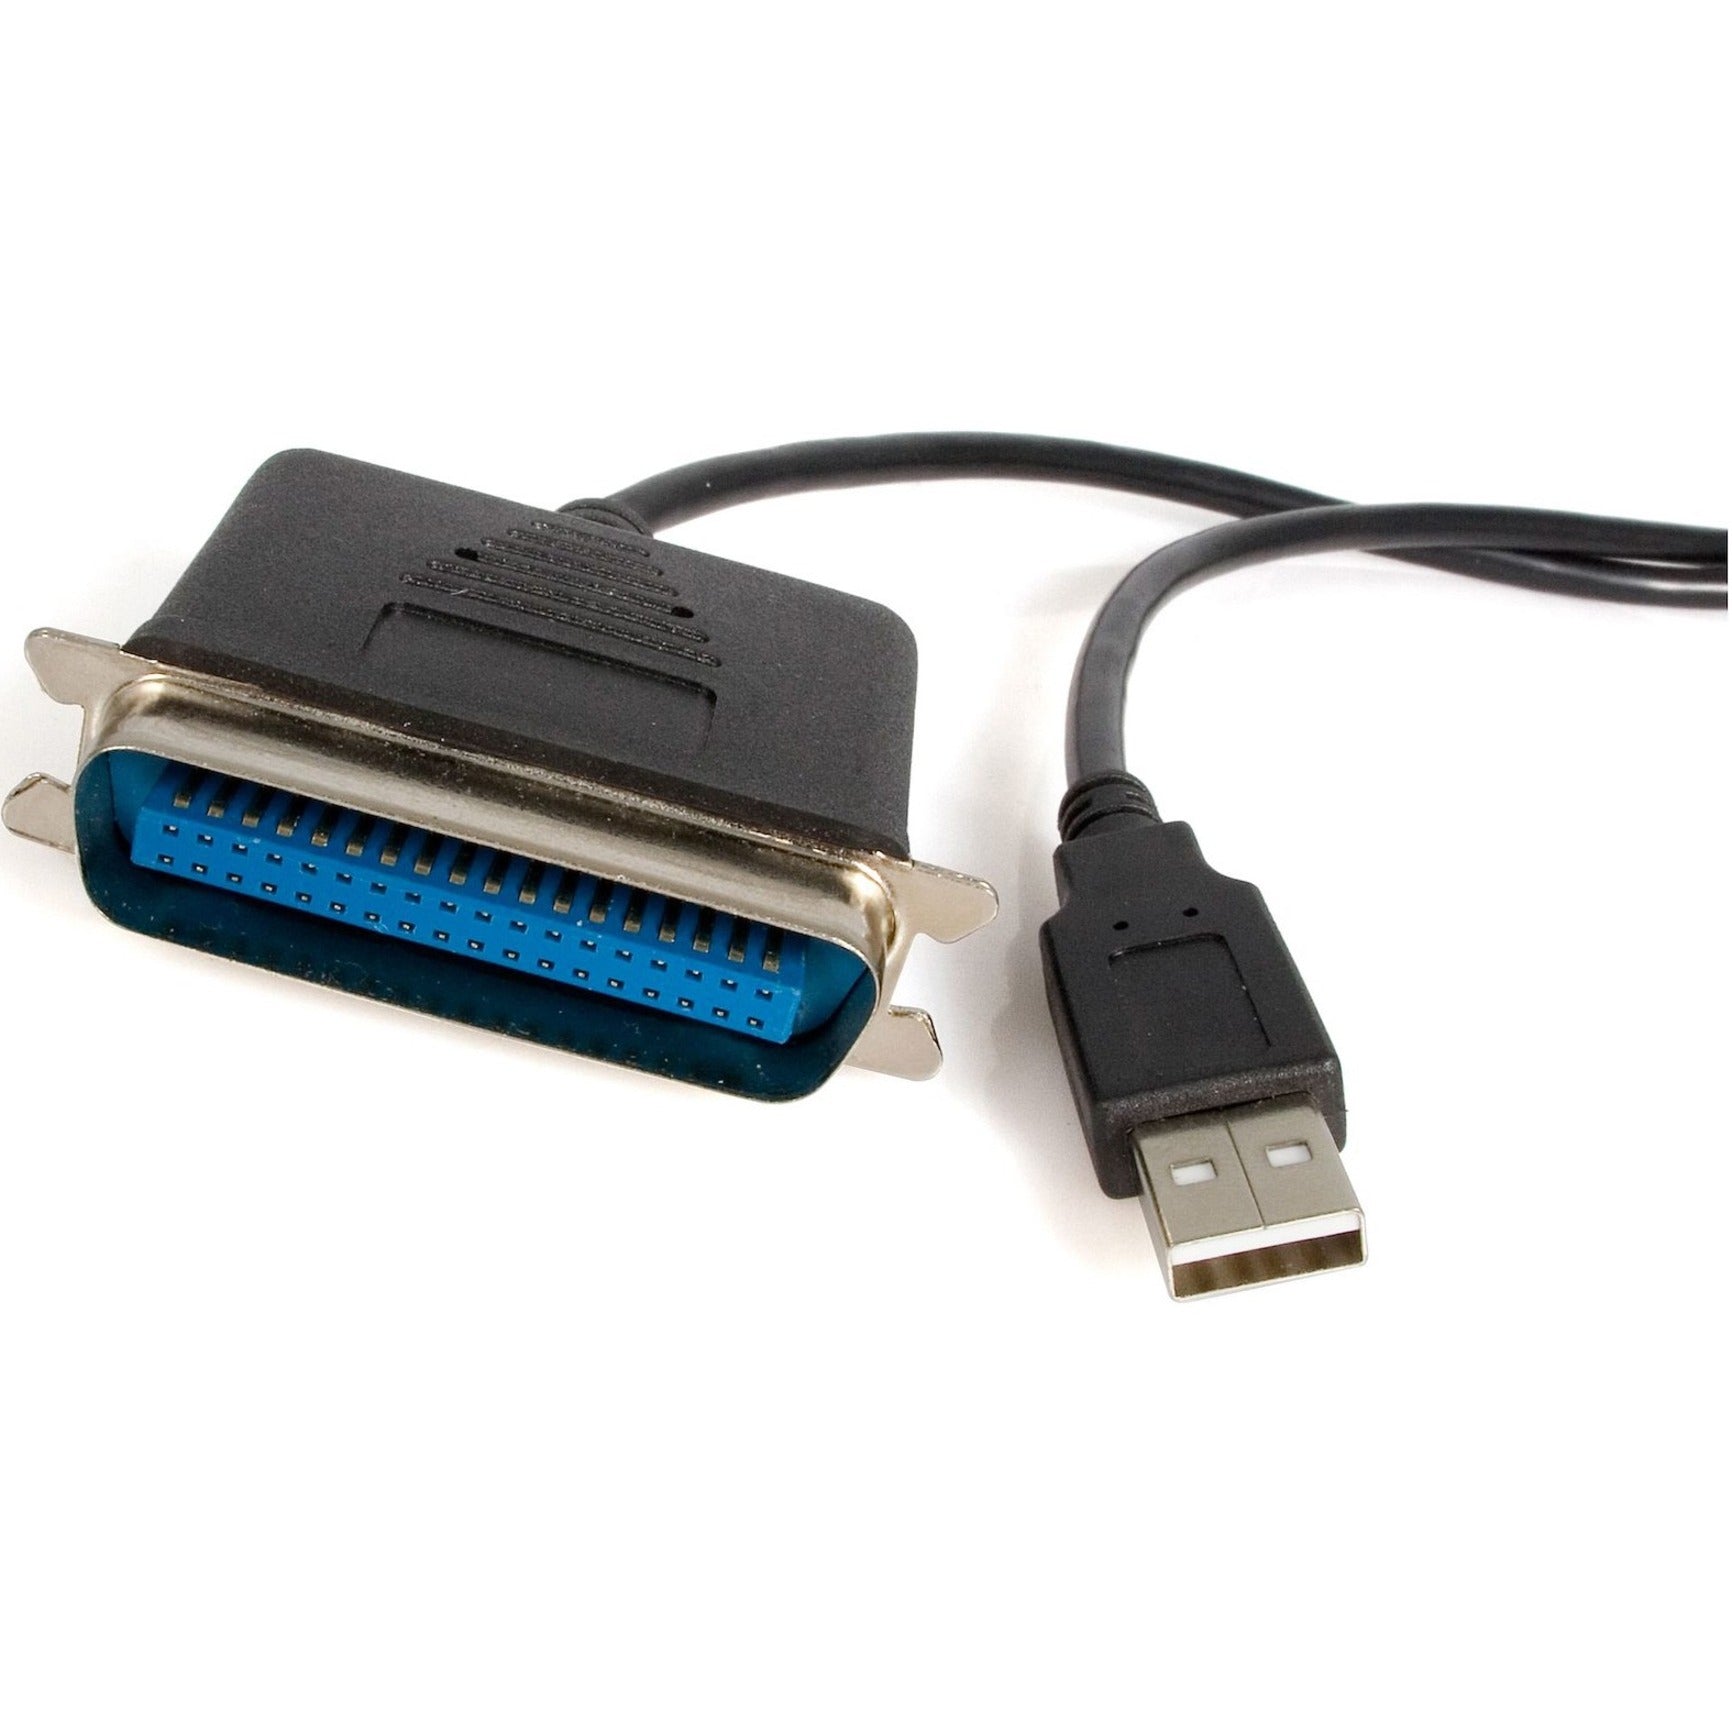 星華科技 ICUSB1284 平行打印機轉接器 - USB - 6 呎，即插即用 星华科技 ICUSB1284 平行打印机适配器 - USB - 6 呎，即插即用